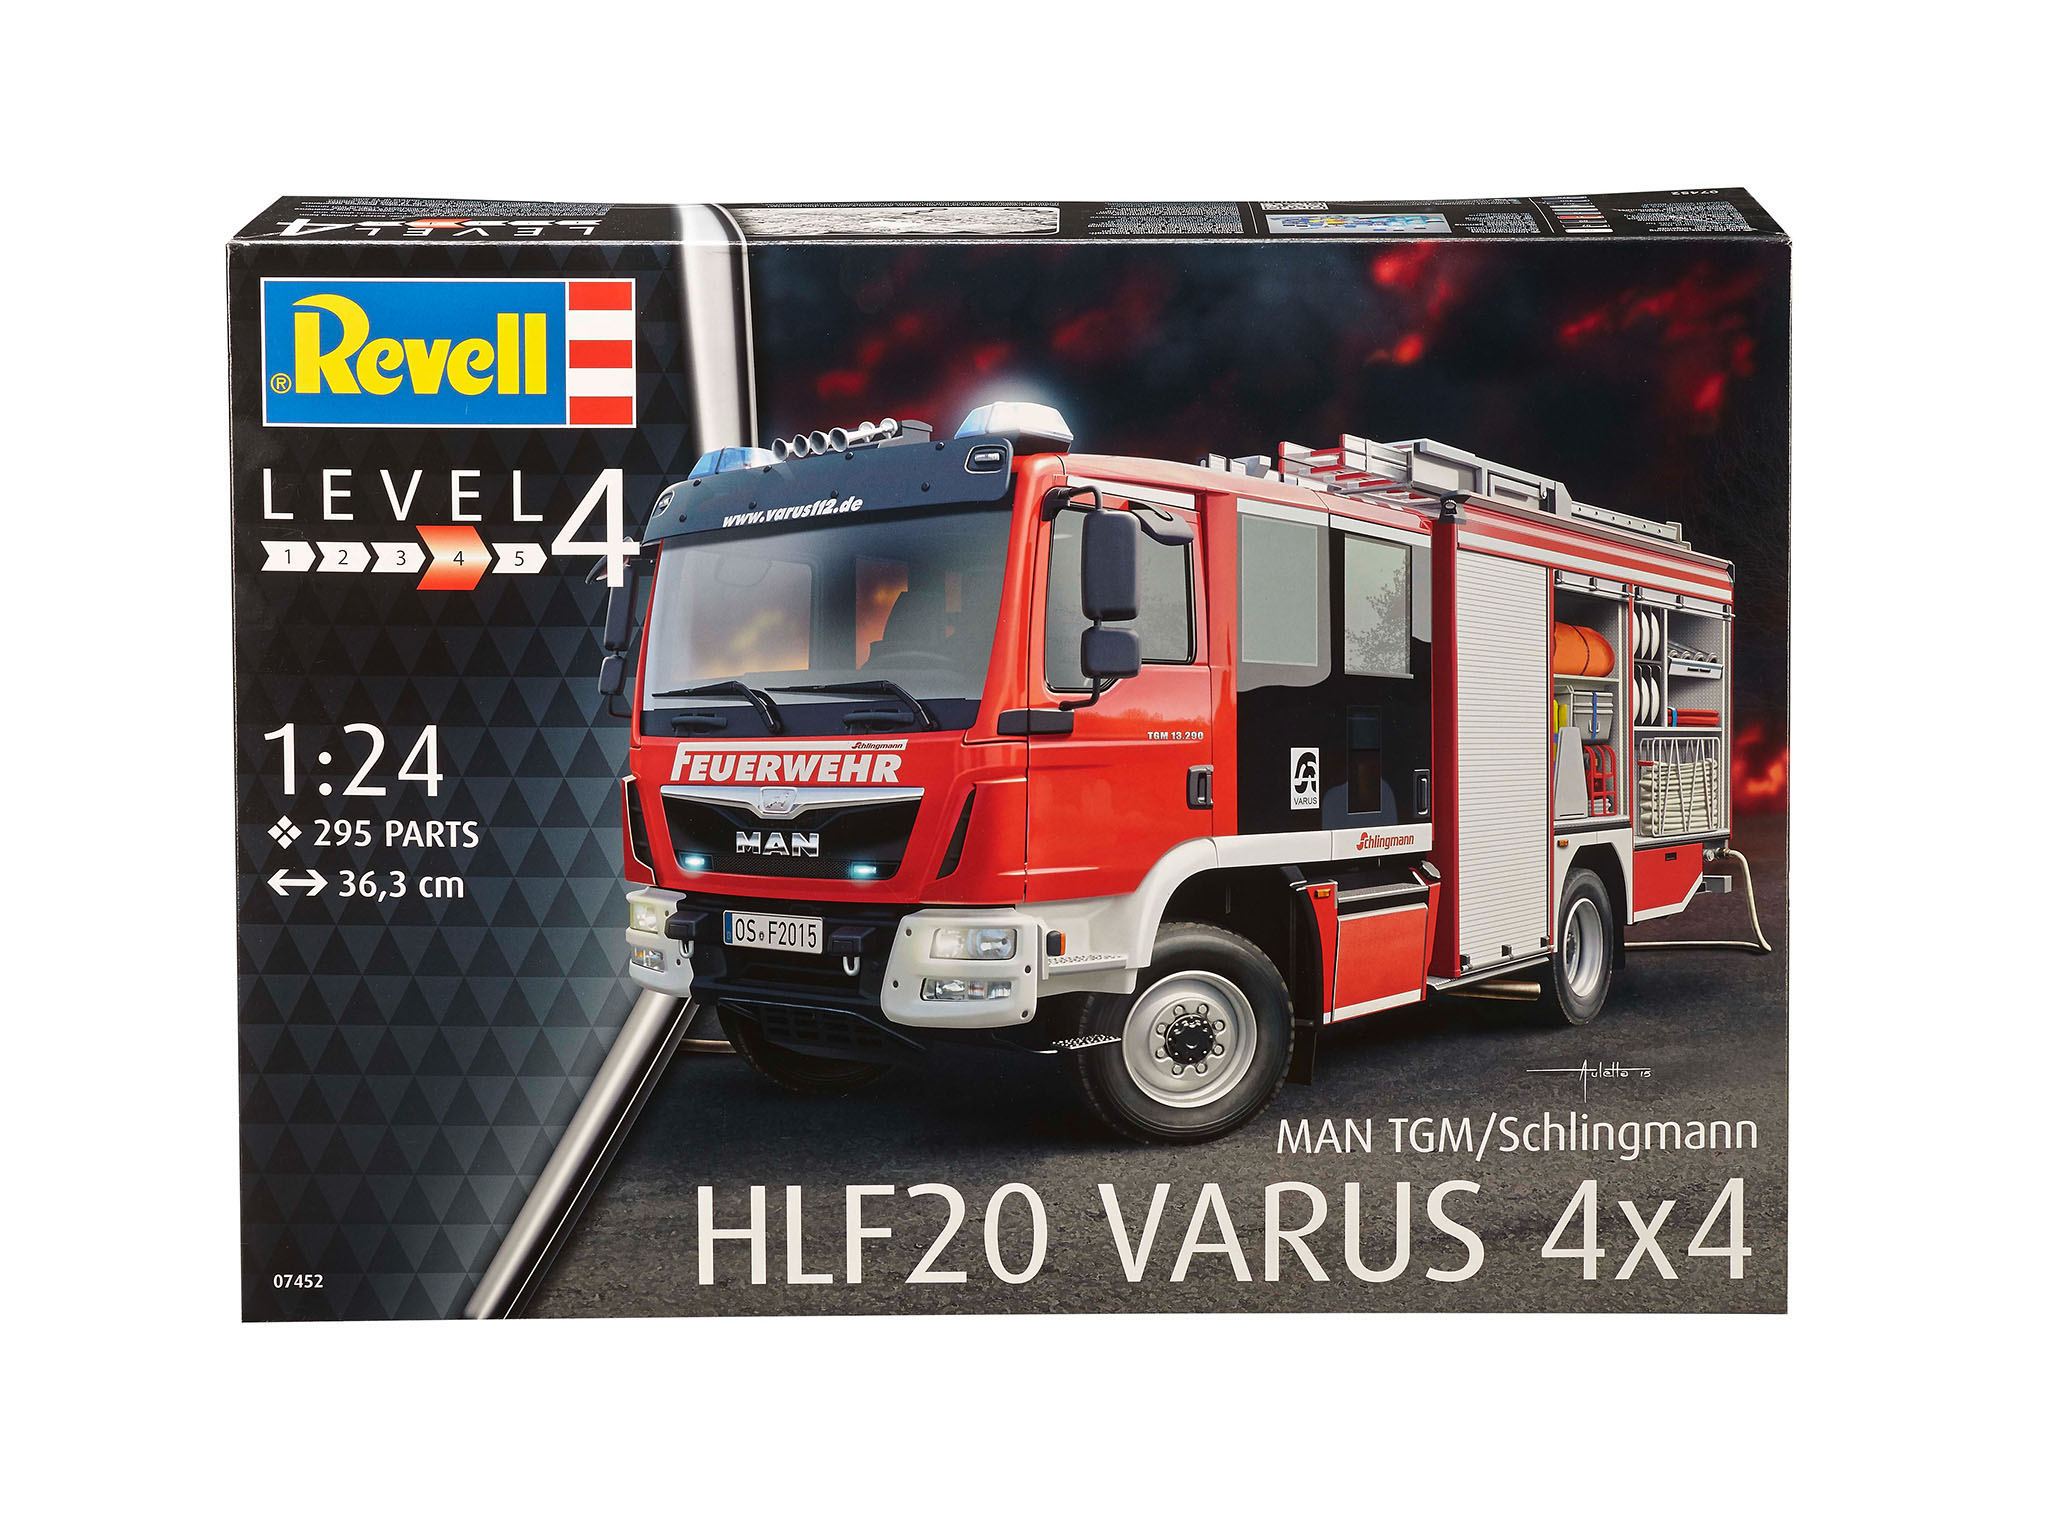 REVELL 20 MAN/Schlingmann 4x4 HLF Mehrfarbig 07452 Bausatz, Varus